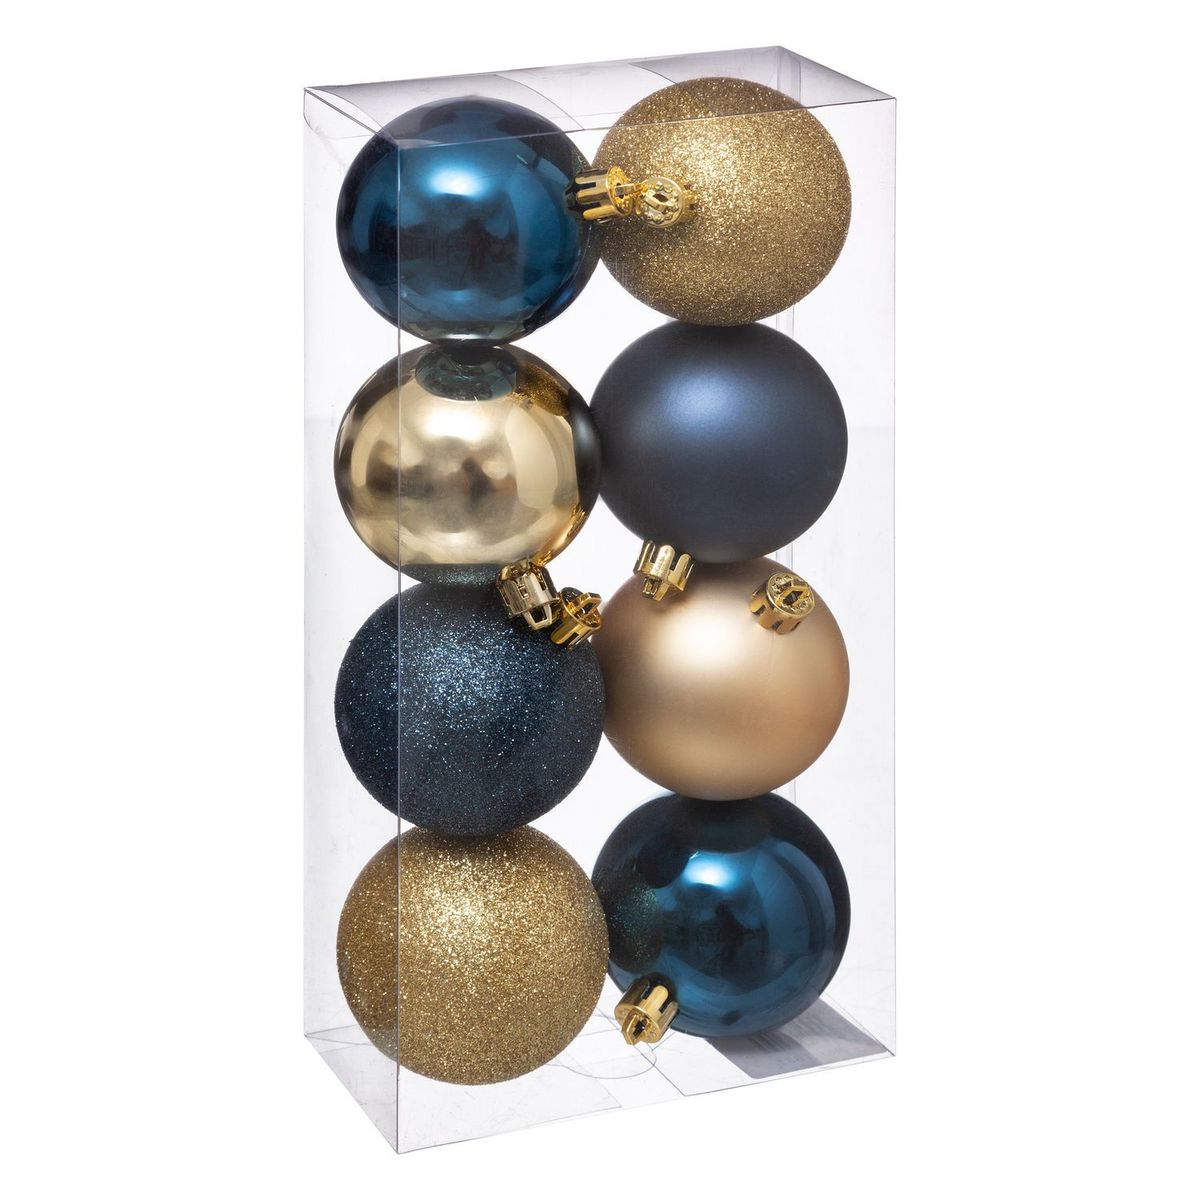  Kit de décorations pour sapin de noël - 8 Pièces - Bleu et or